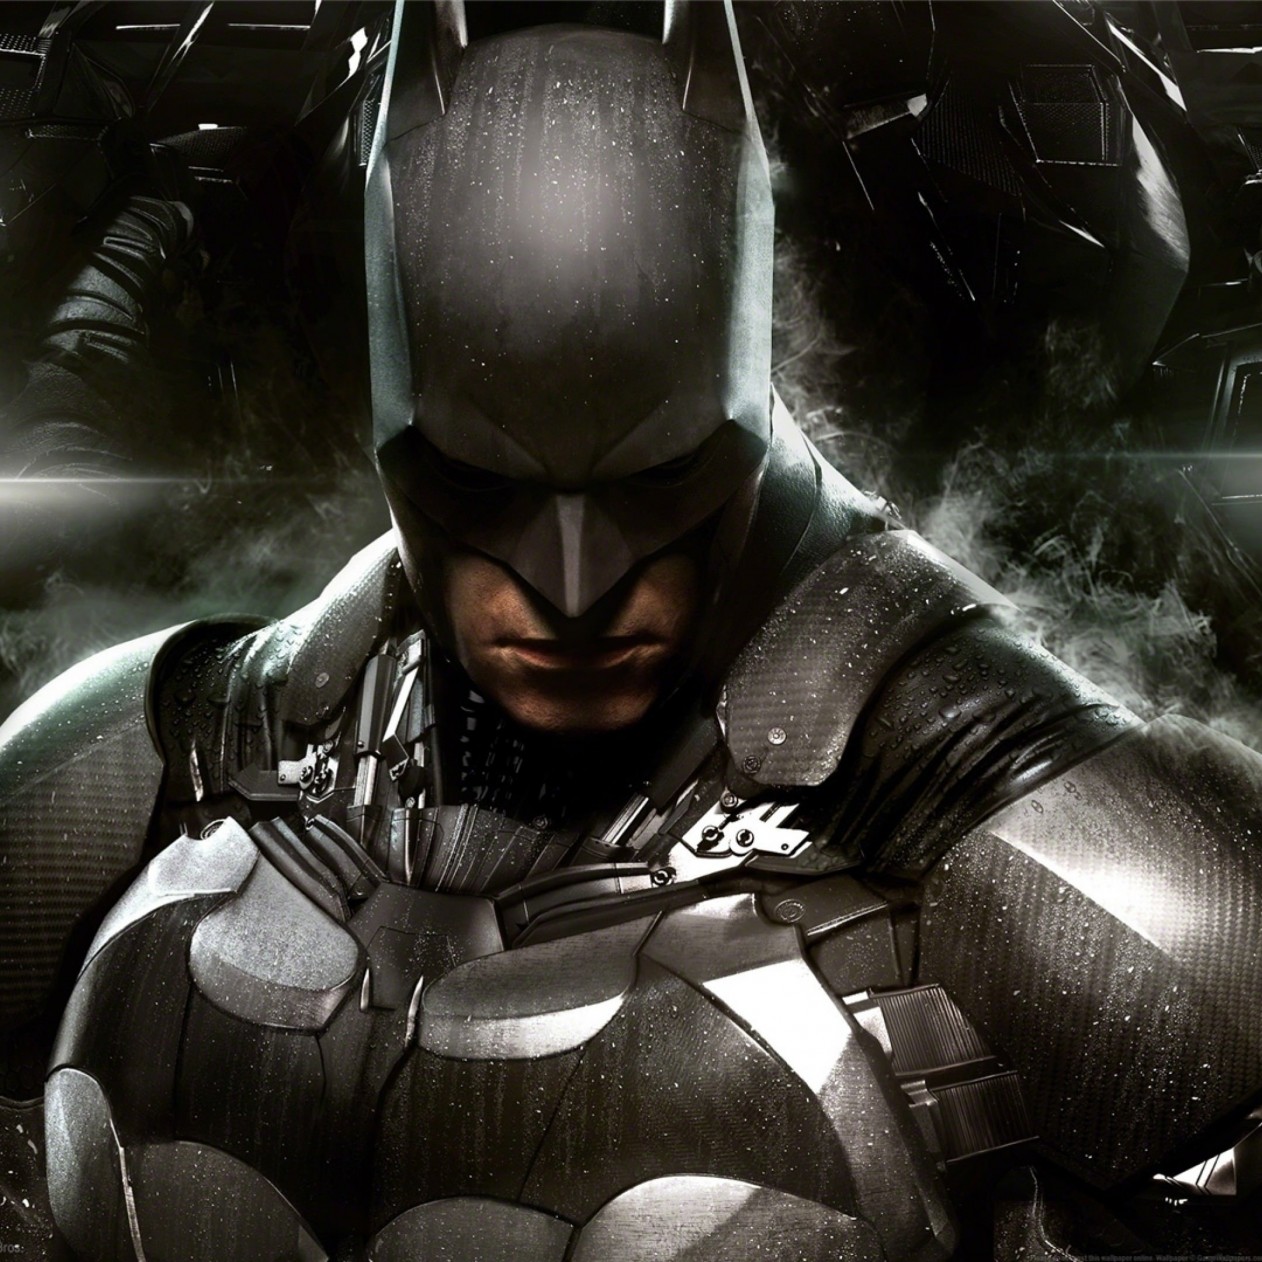 The Batman : Arkham Knight Wallpaper for Apple iPad mini